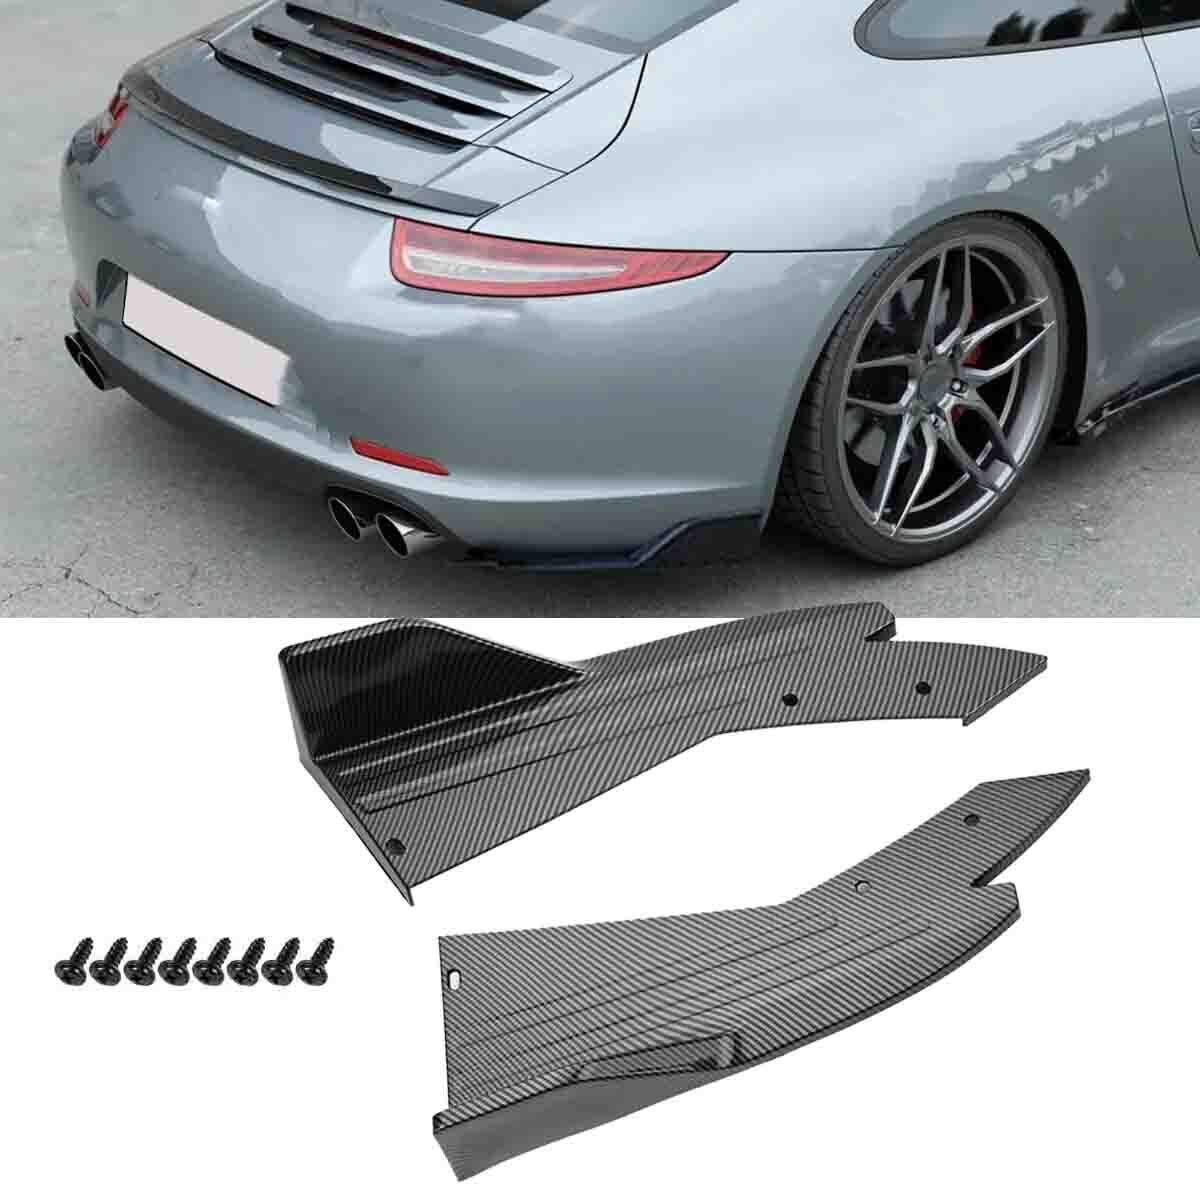 Rear Bumper Diffuser Spoiler Lip Splitters For Porsche Carrera GT 911 996 997